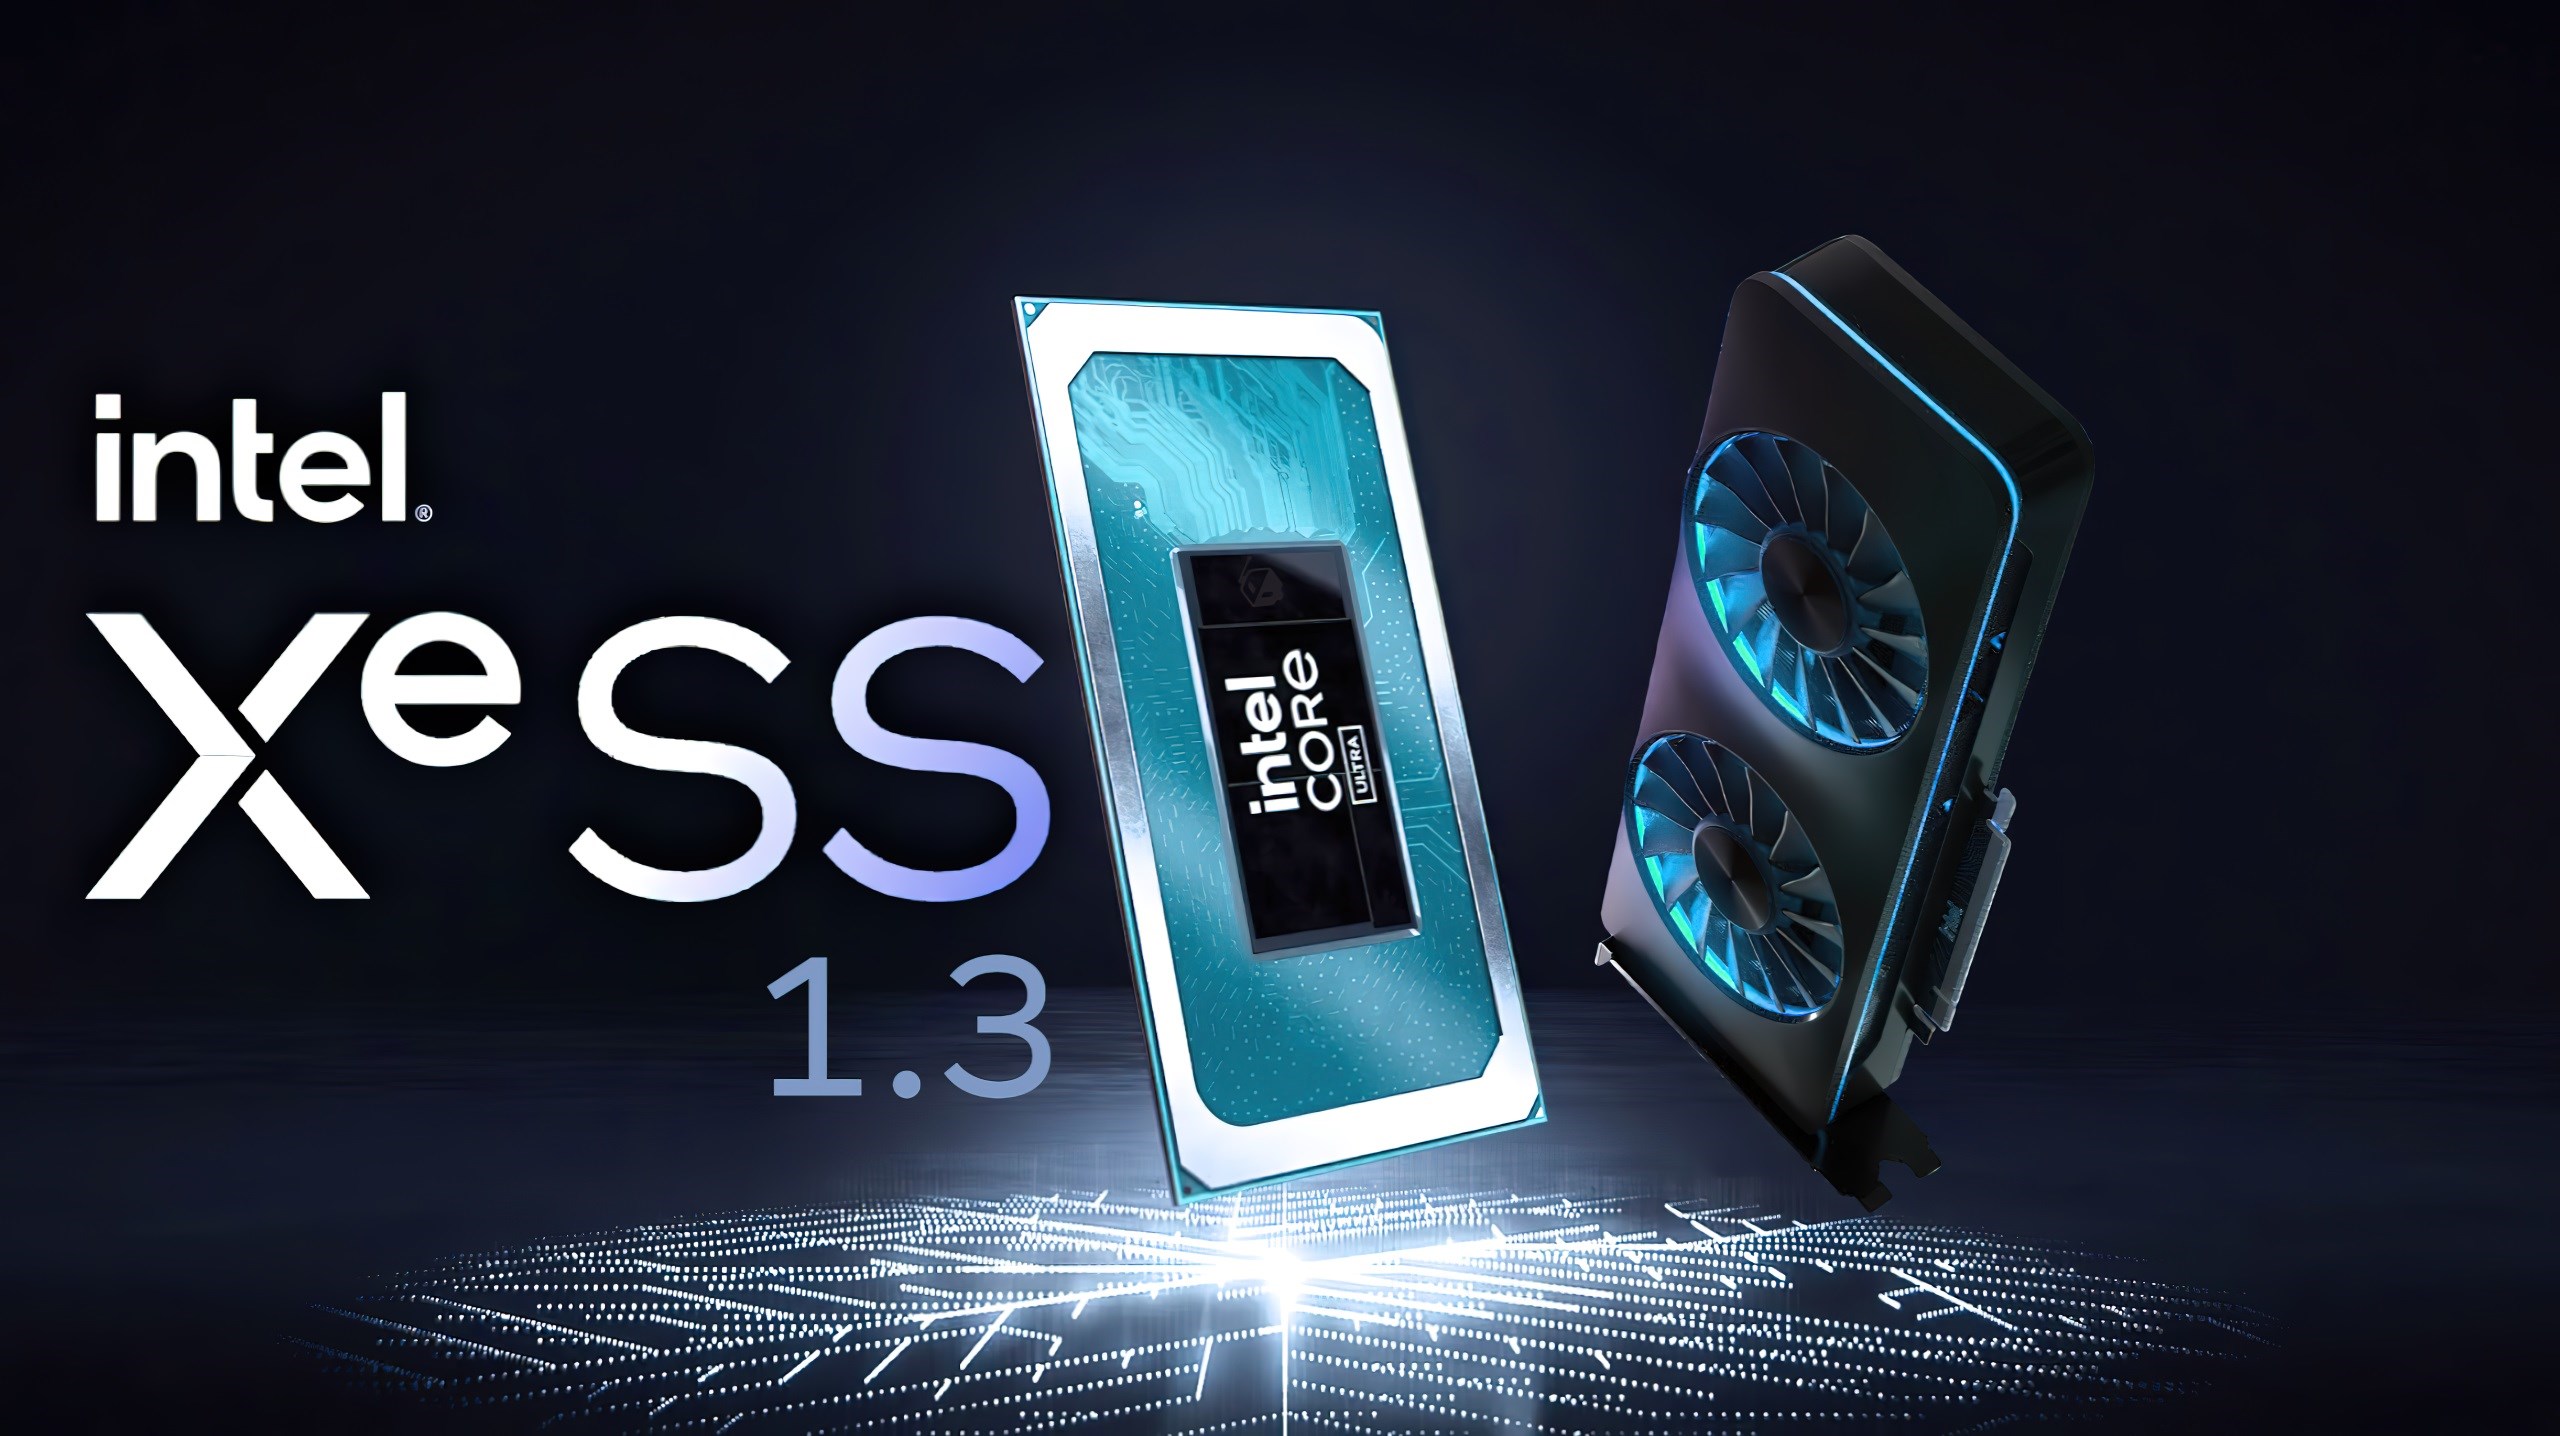 Intel XeSS 1.3 yayınlandı: Radikal iyileştirmeler getiriyor